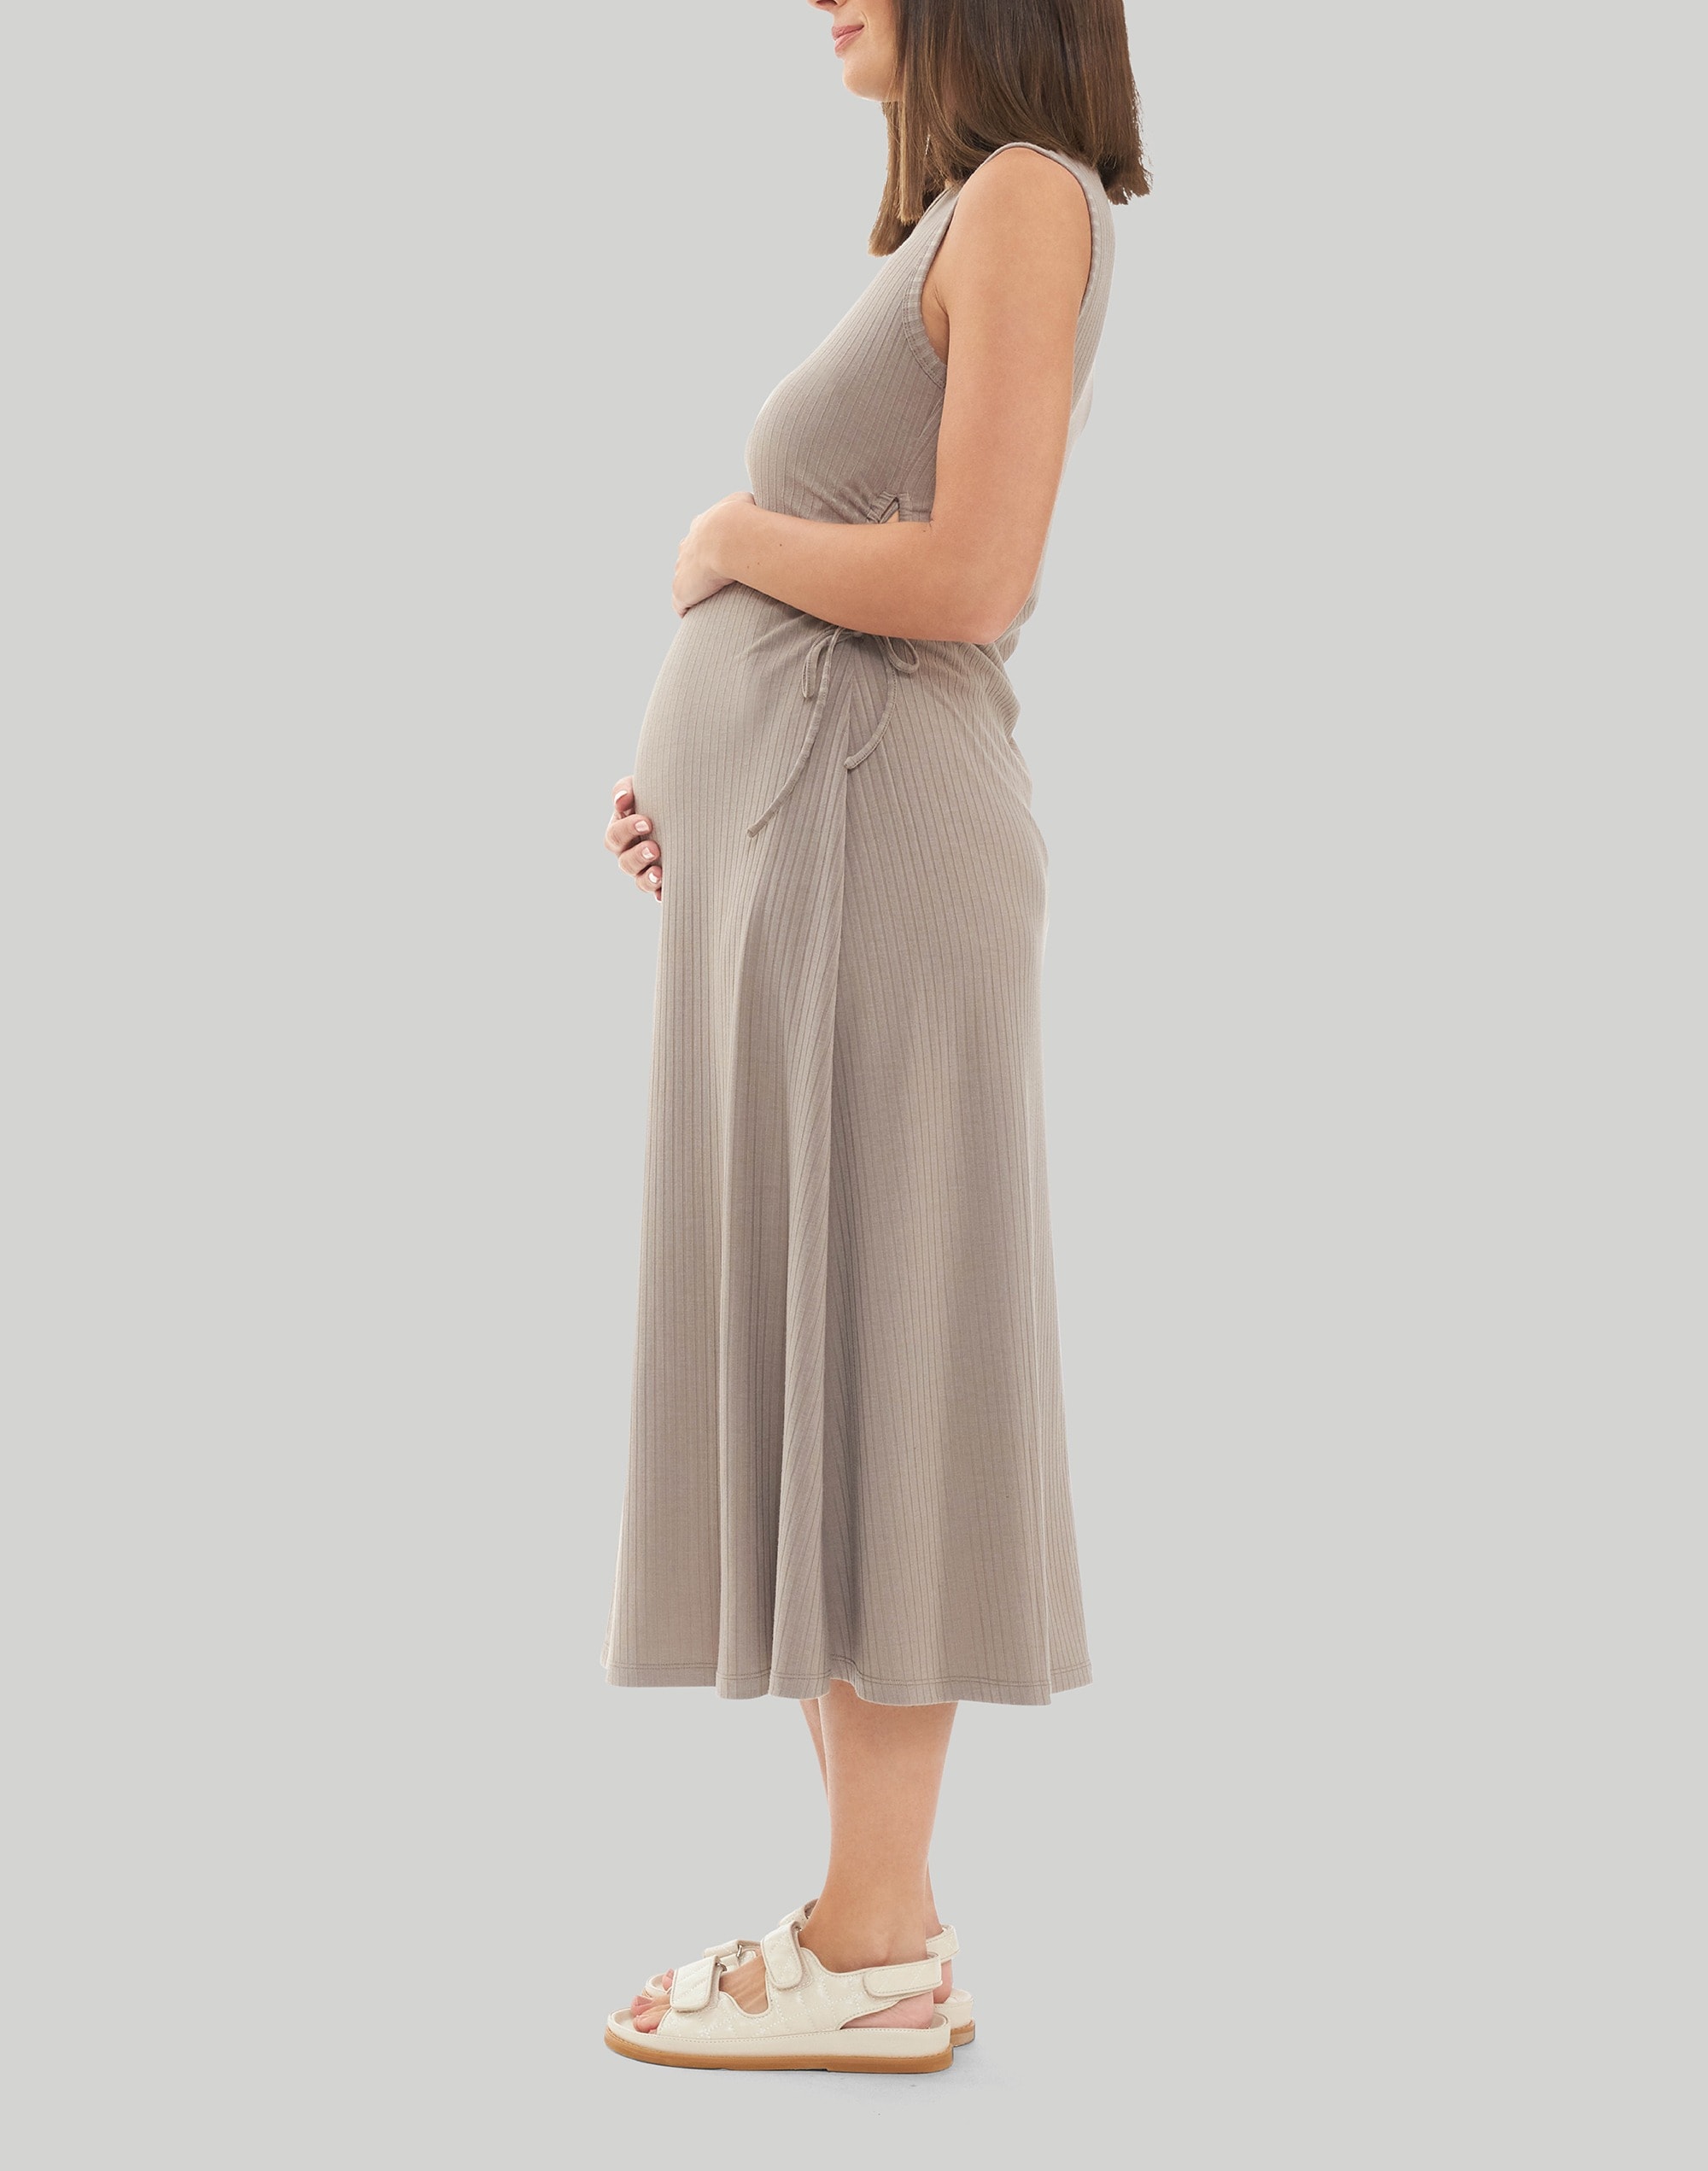 Ripe Maternity Carol Rib A-line Dress